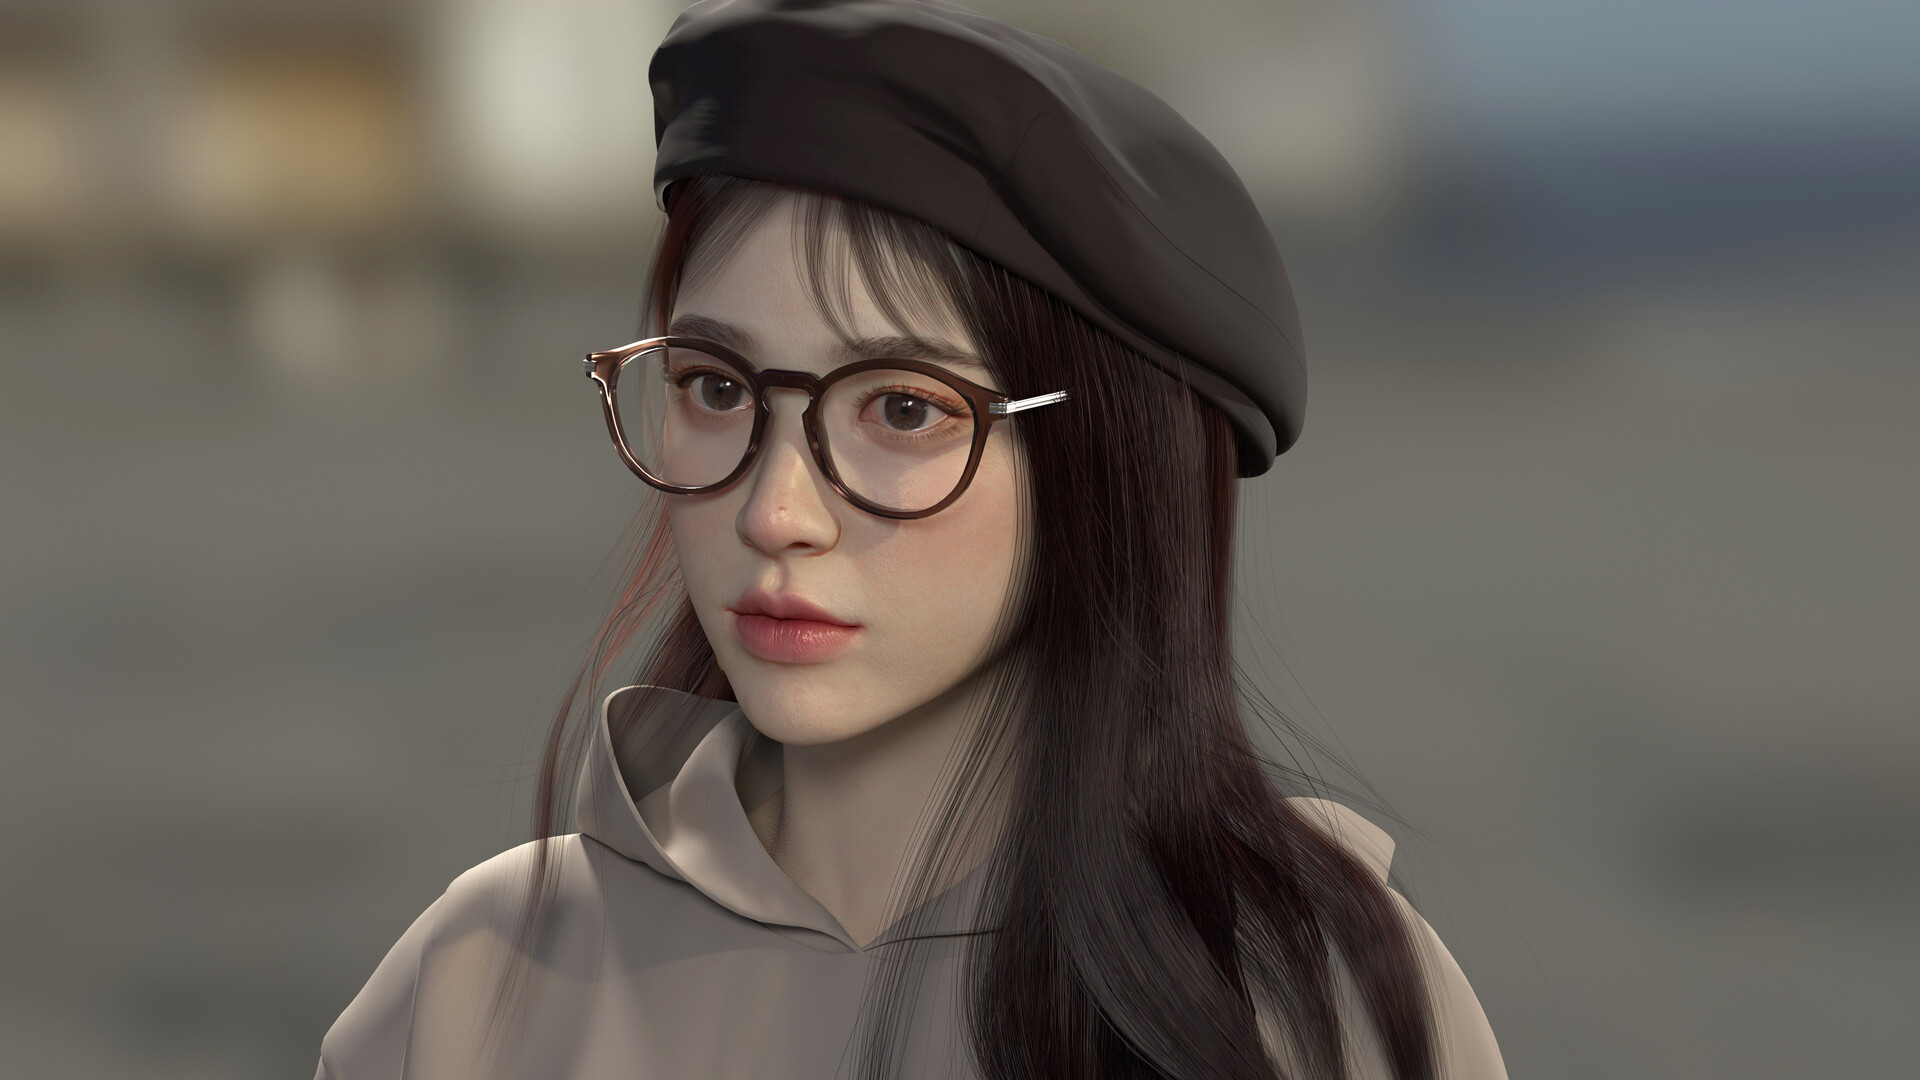 Artwork Digital Art 3D Women Brunette Hat Glasses Women With Glasses Long Hair 1920x1080